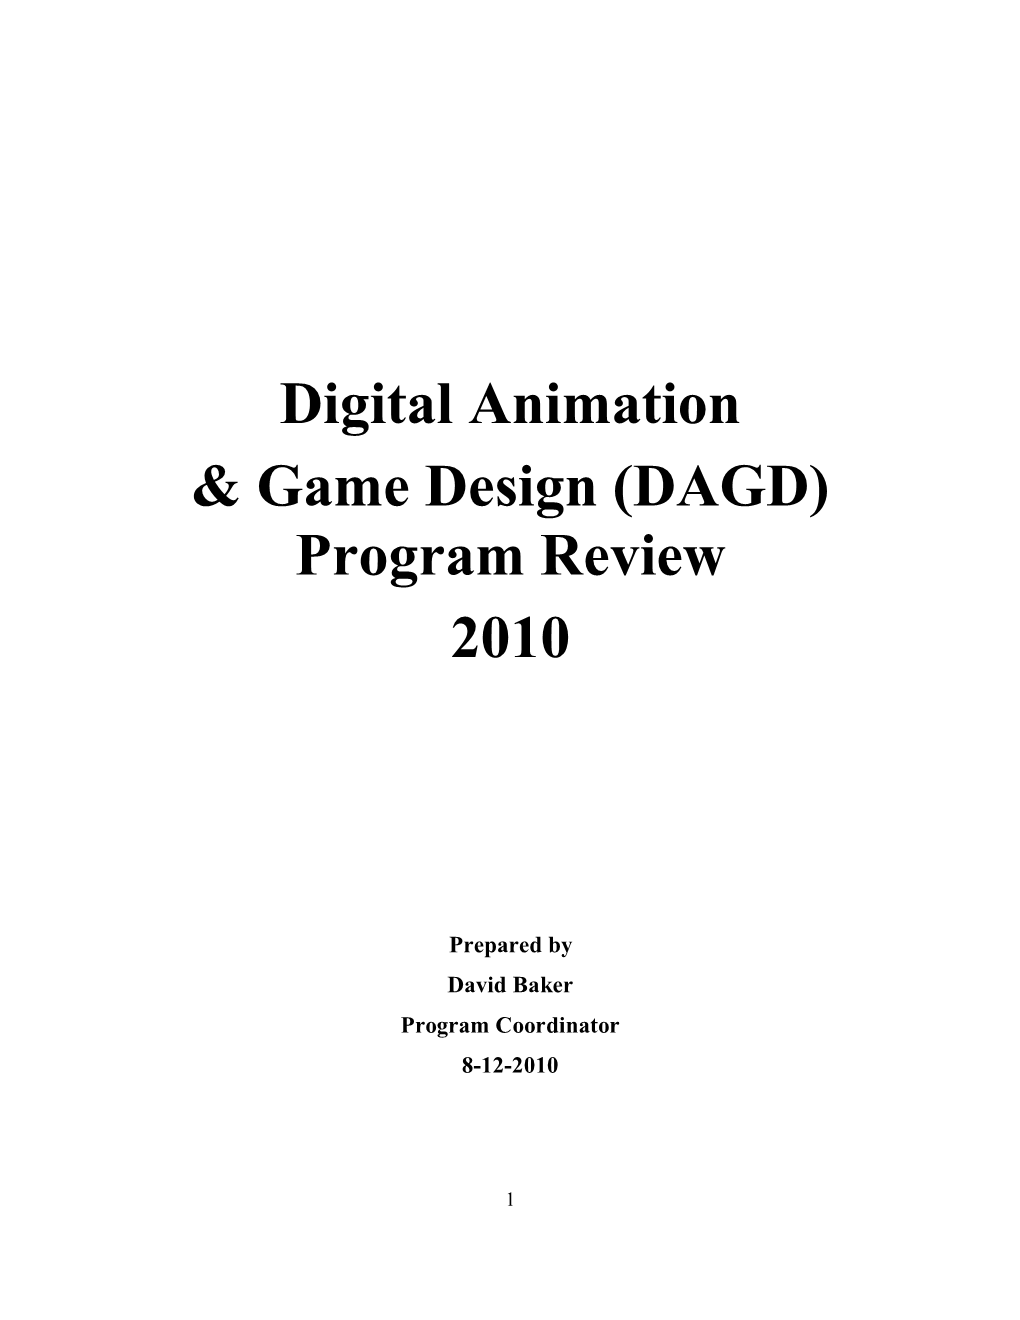 Digital Animation & Game Design (DAGD) Program Review 2010